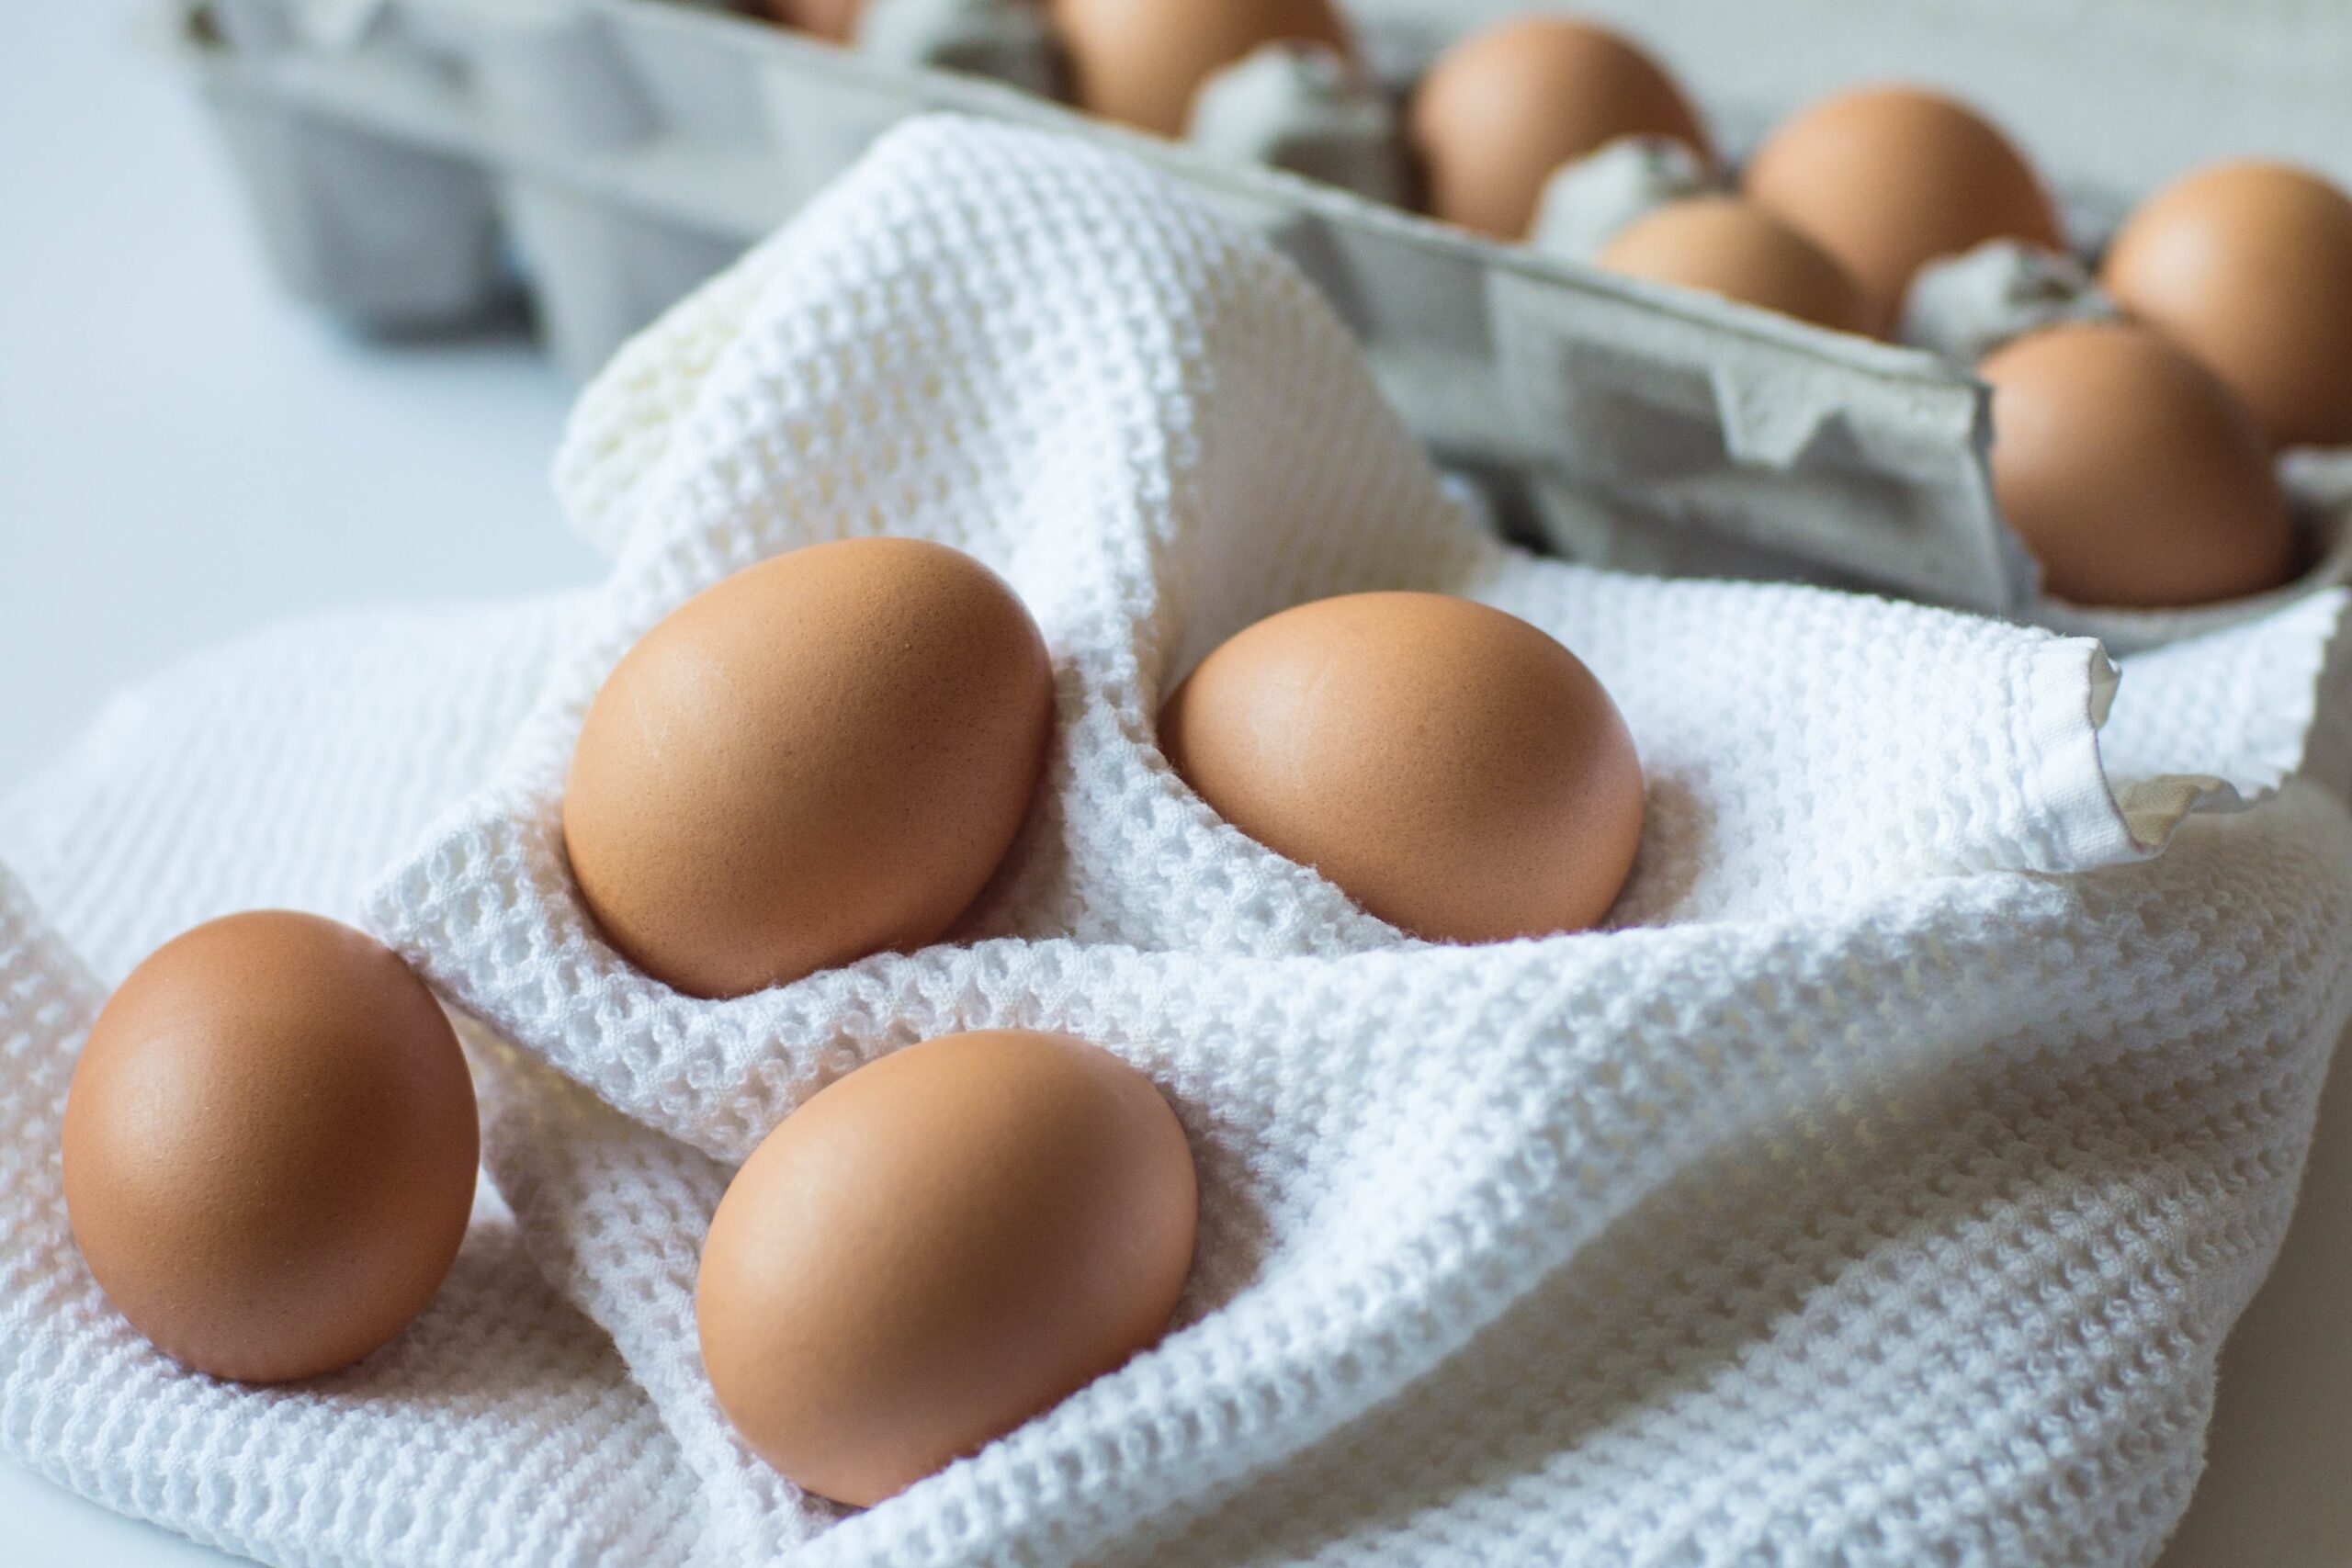 Ученые из Университета Коннектикута выяснили, как яйца влияют на холестерин